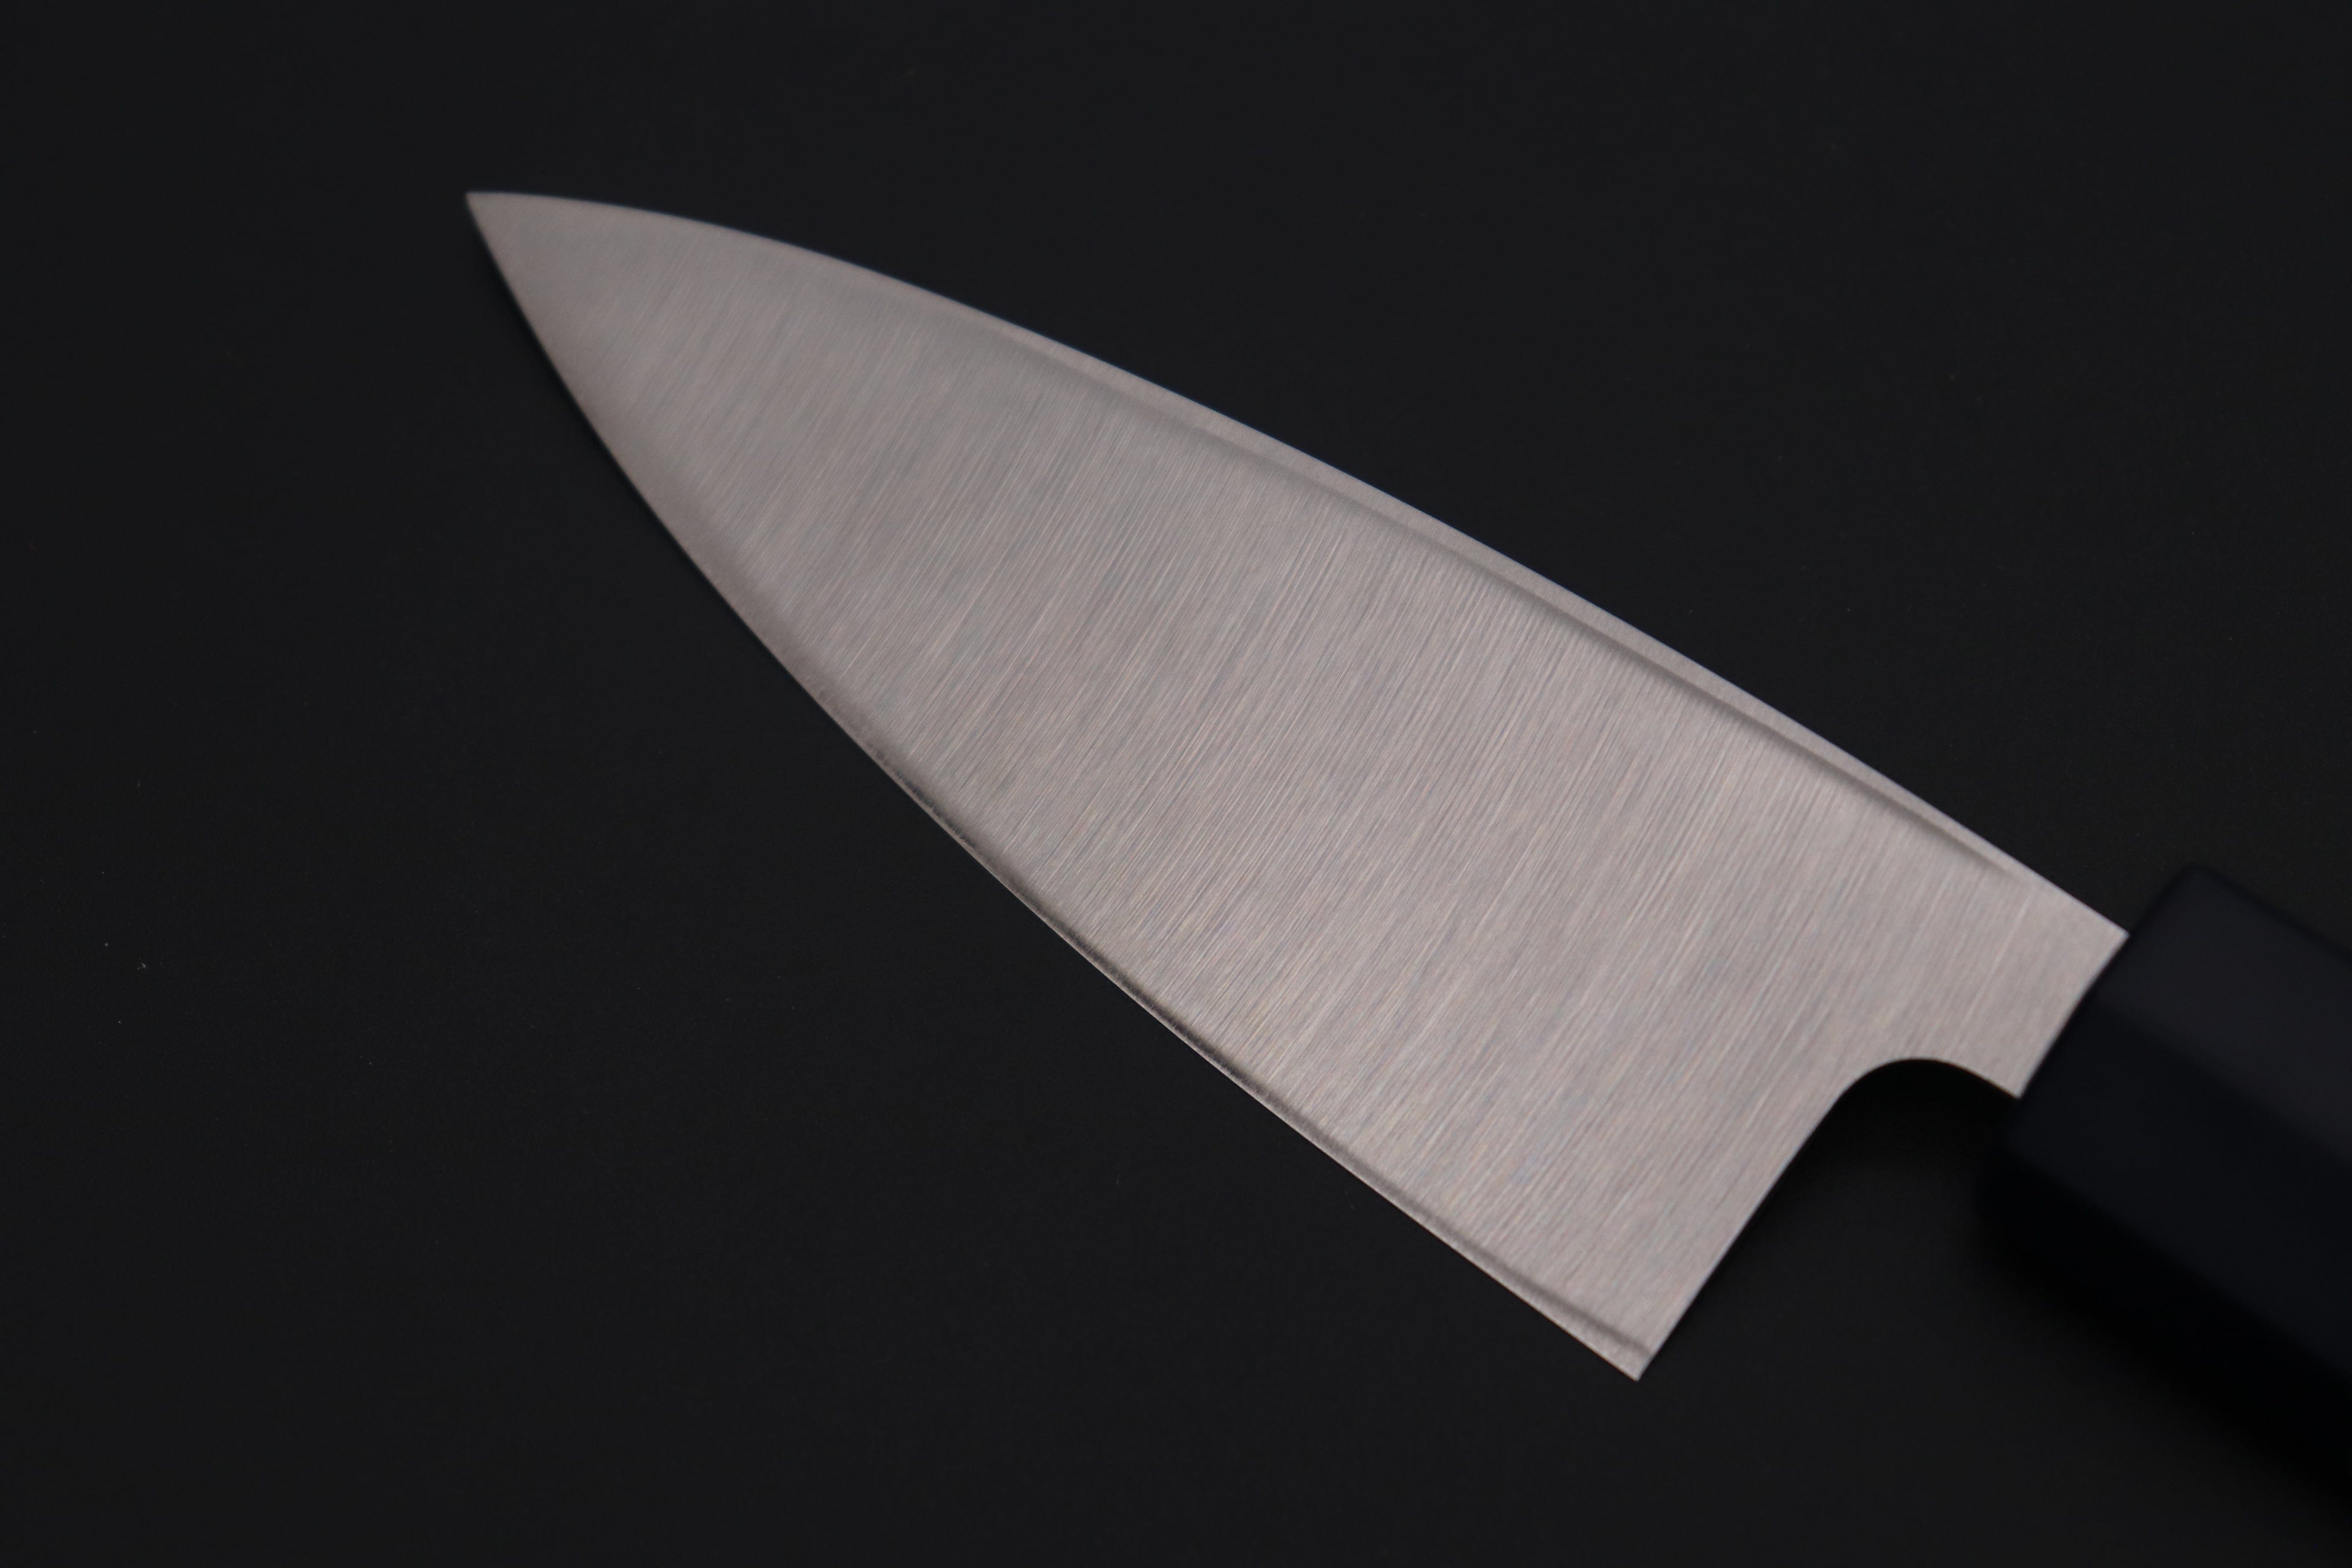 KAI Wasabi Chef's knife